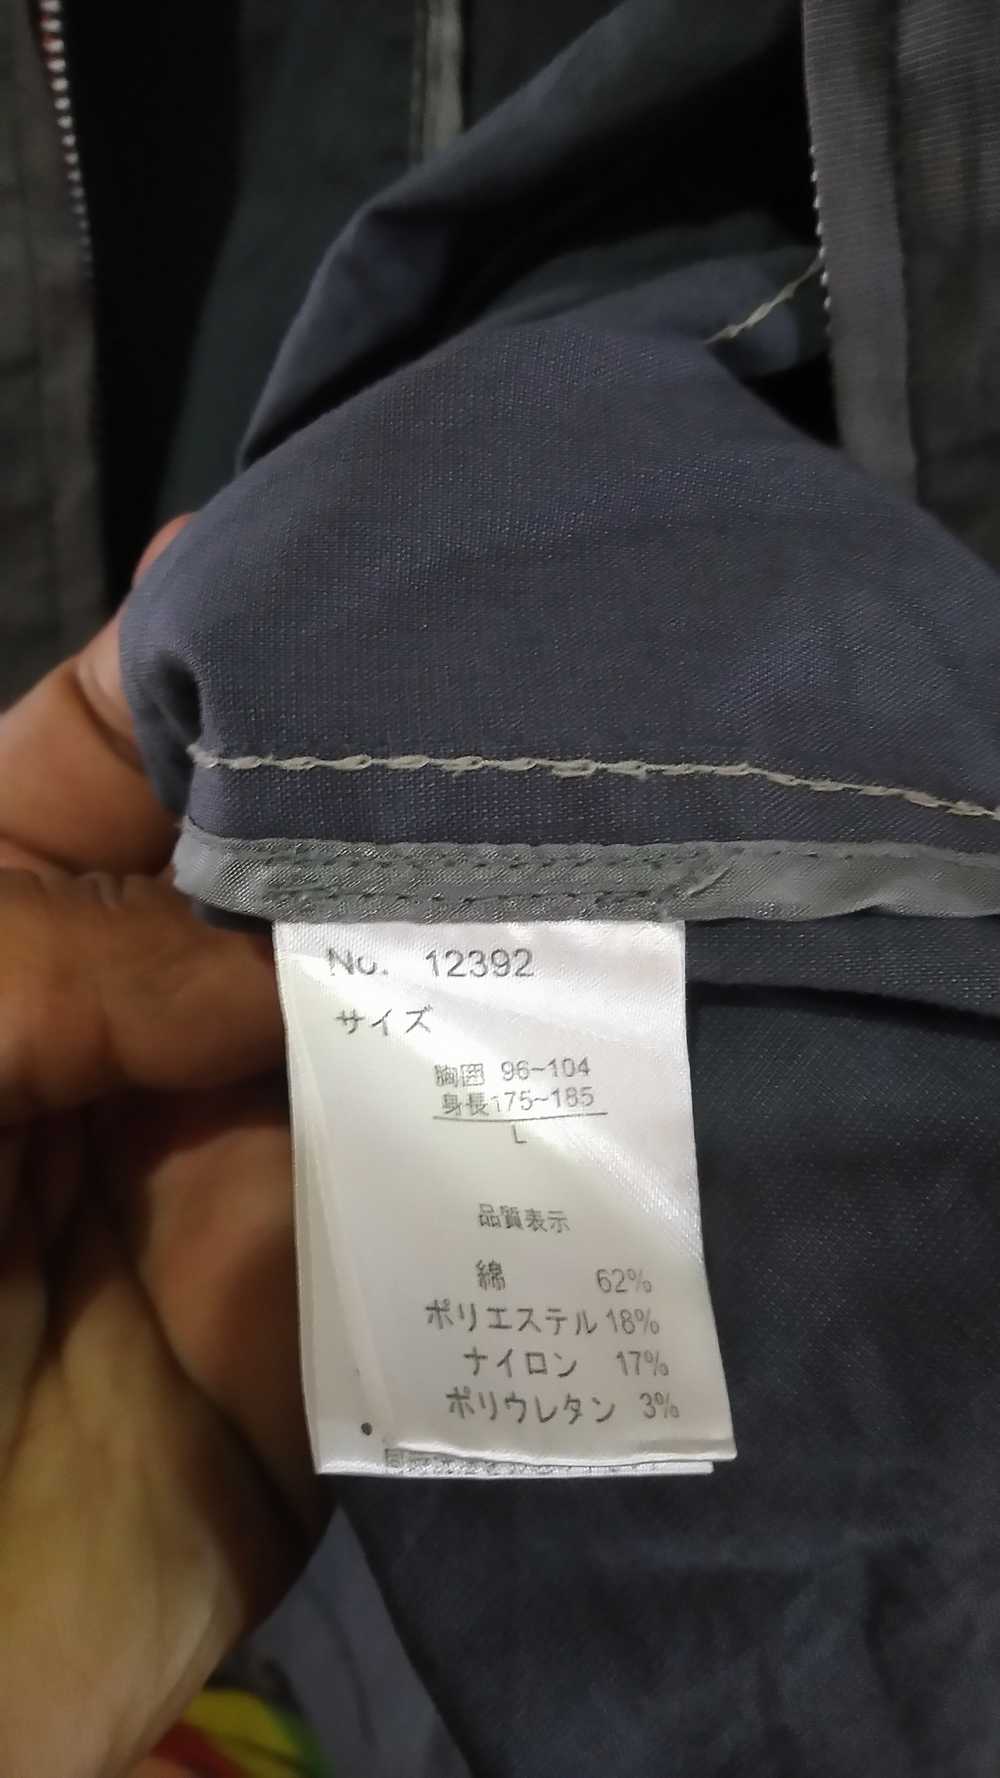 Japanese Brand - Kansai Yamamoto jacket - image 8